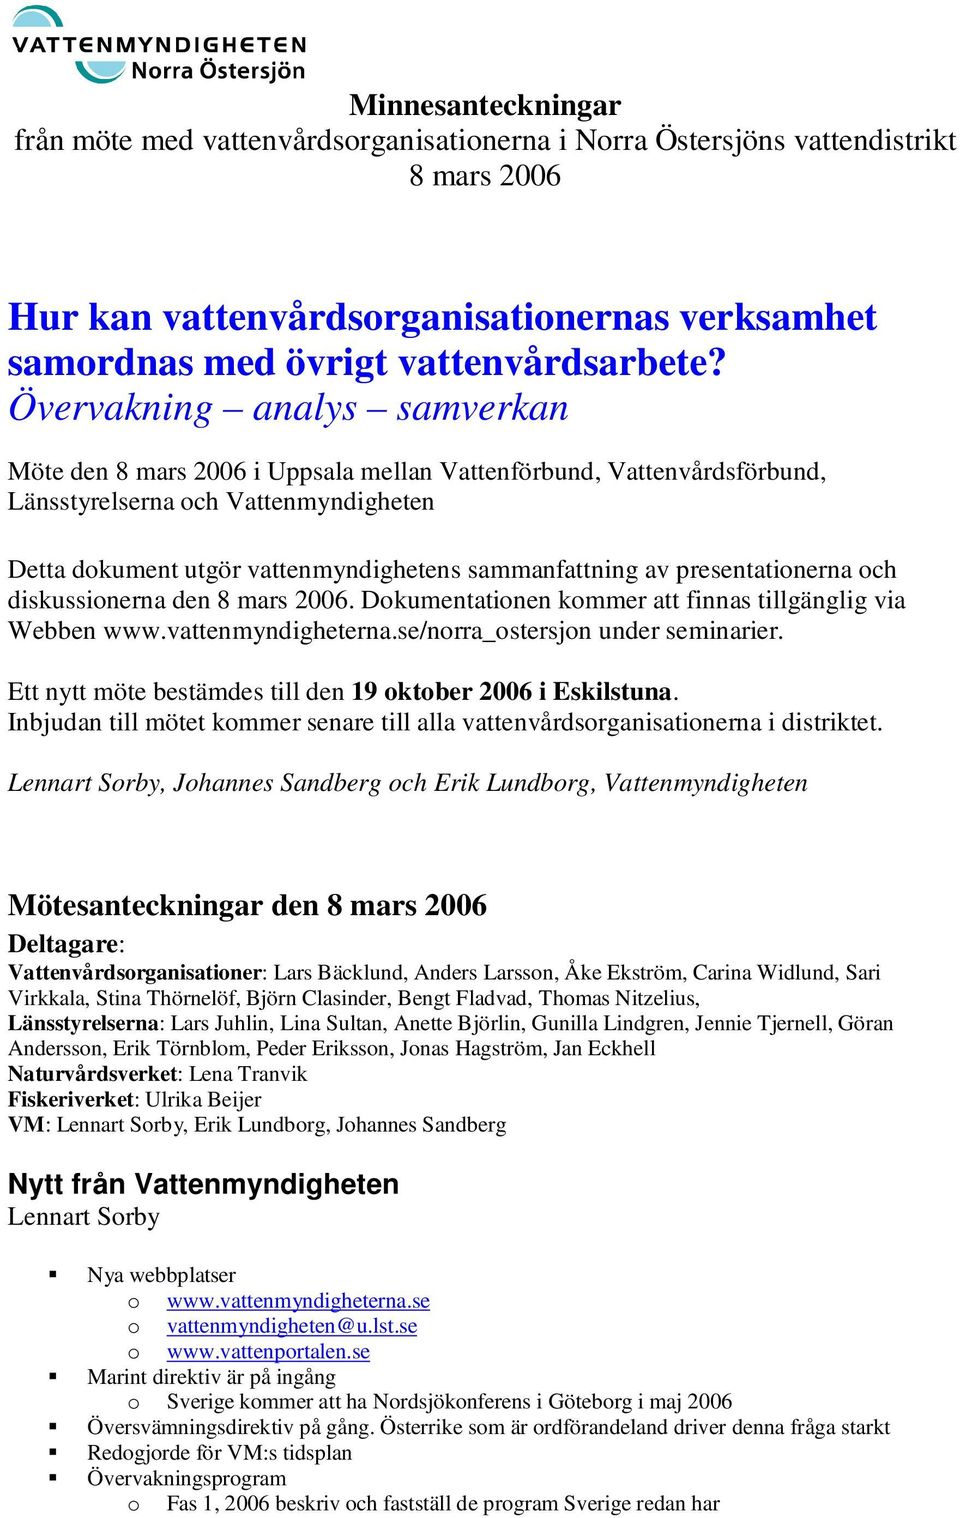 ch diskussinerna den. Dkumentatinen kmmer att finnas tillgänglig via Webben www.vattenmyndigheterna.se/nrra_stersjn under seminarier. Ett nytt möte bestämdes till den 19 ktber 2006 i Eskilstuna.